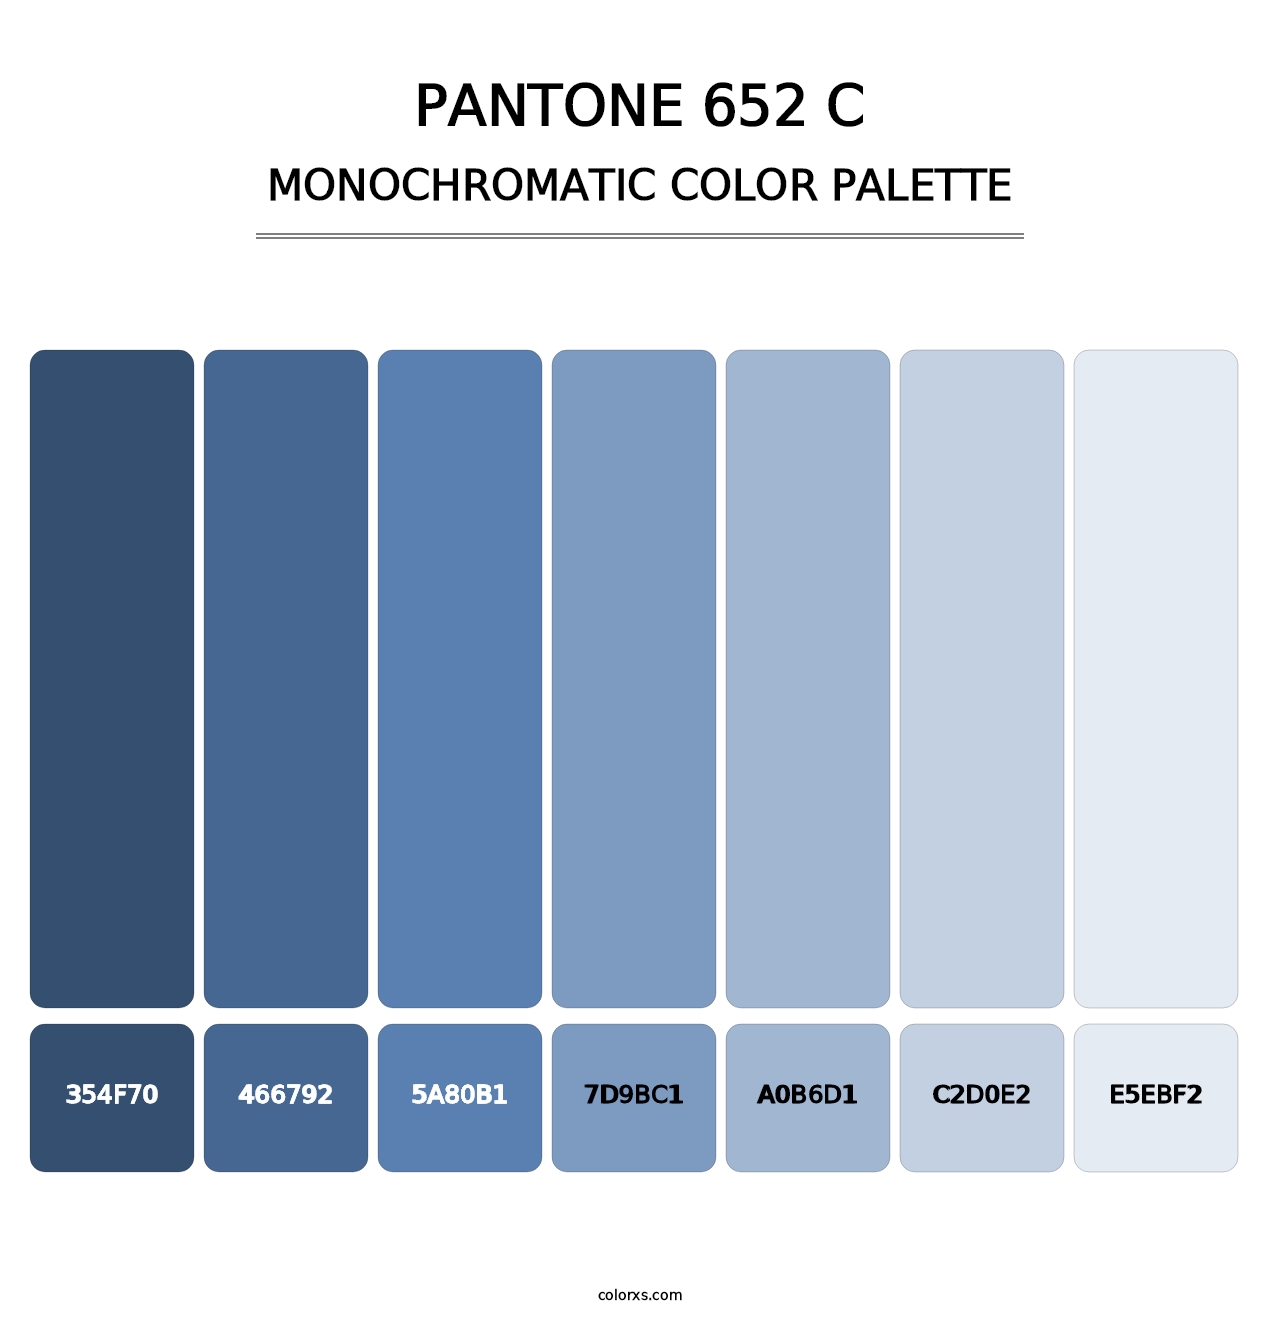 PANTONE 652 C - Monochromatic Color Palette